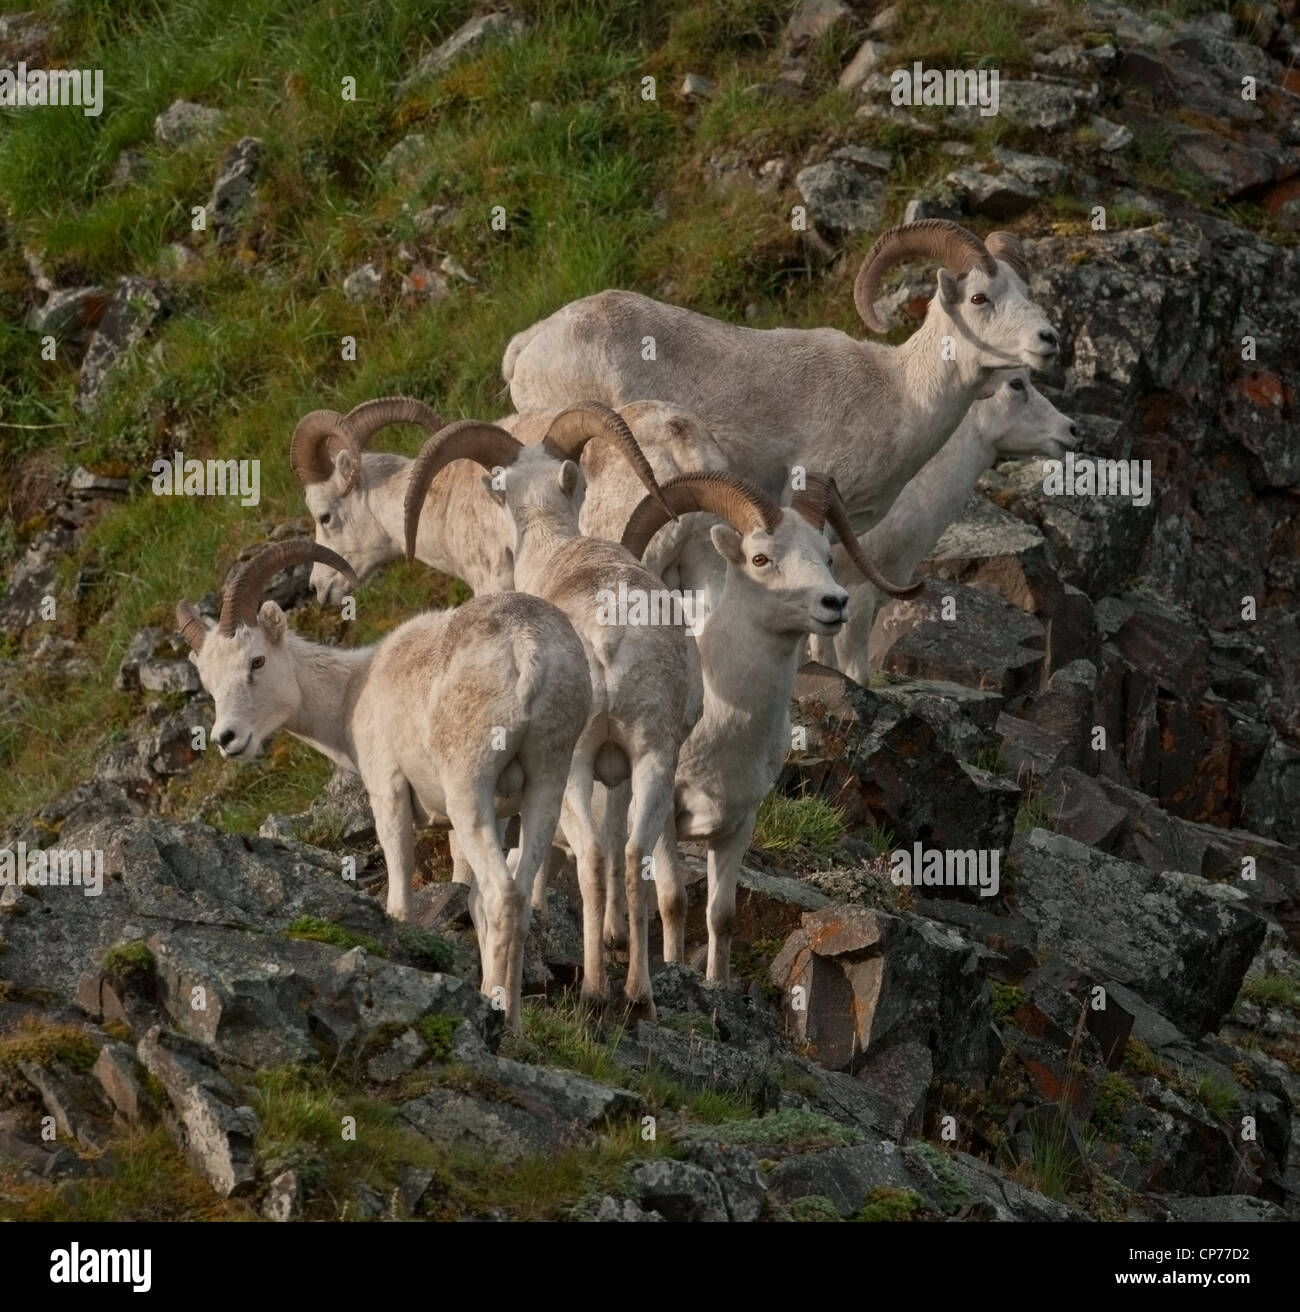 Le mouflon de Dall (Ovis dalli) Rams le parc national Denali, en Alaska. Banque D'Images